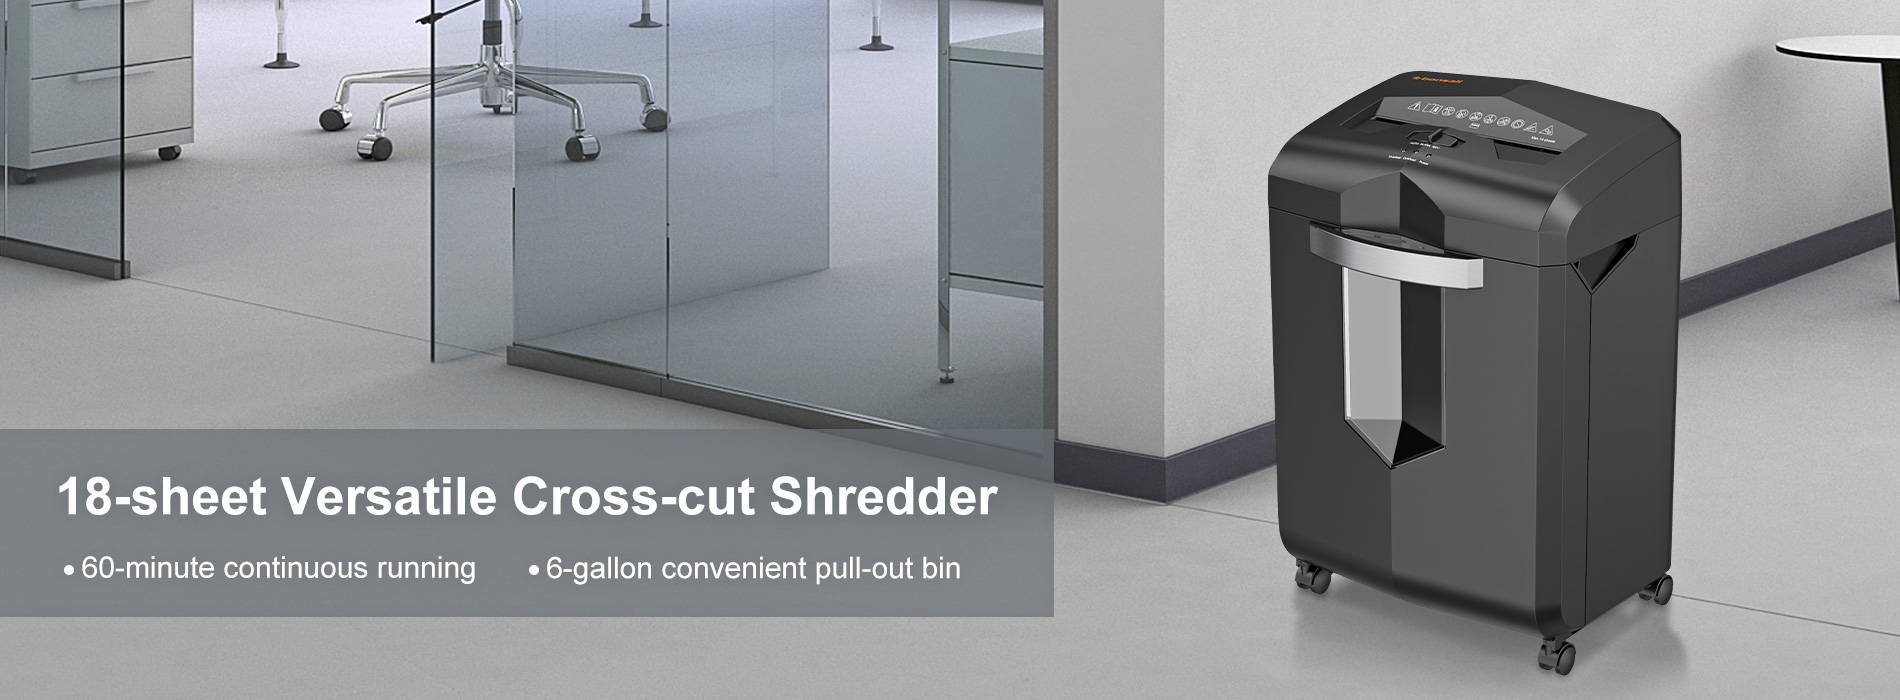 18-sheet versatile cross-cut shredder 60-minute continuous running 6-gallon convenient pull-out bin